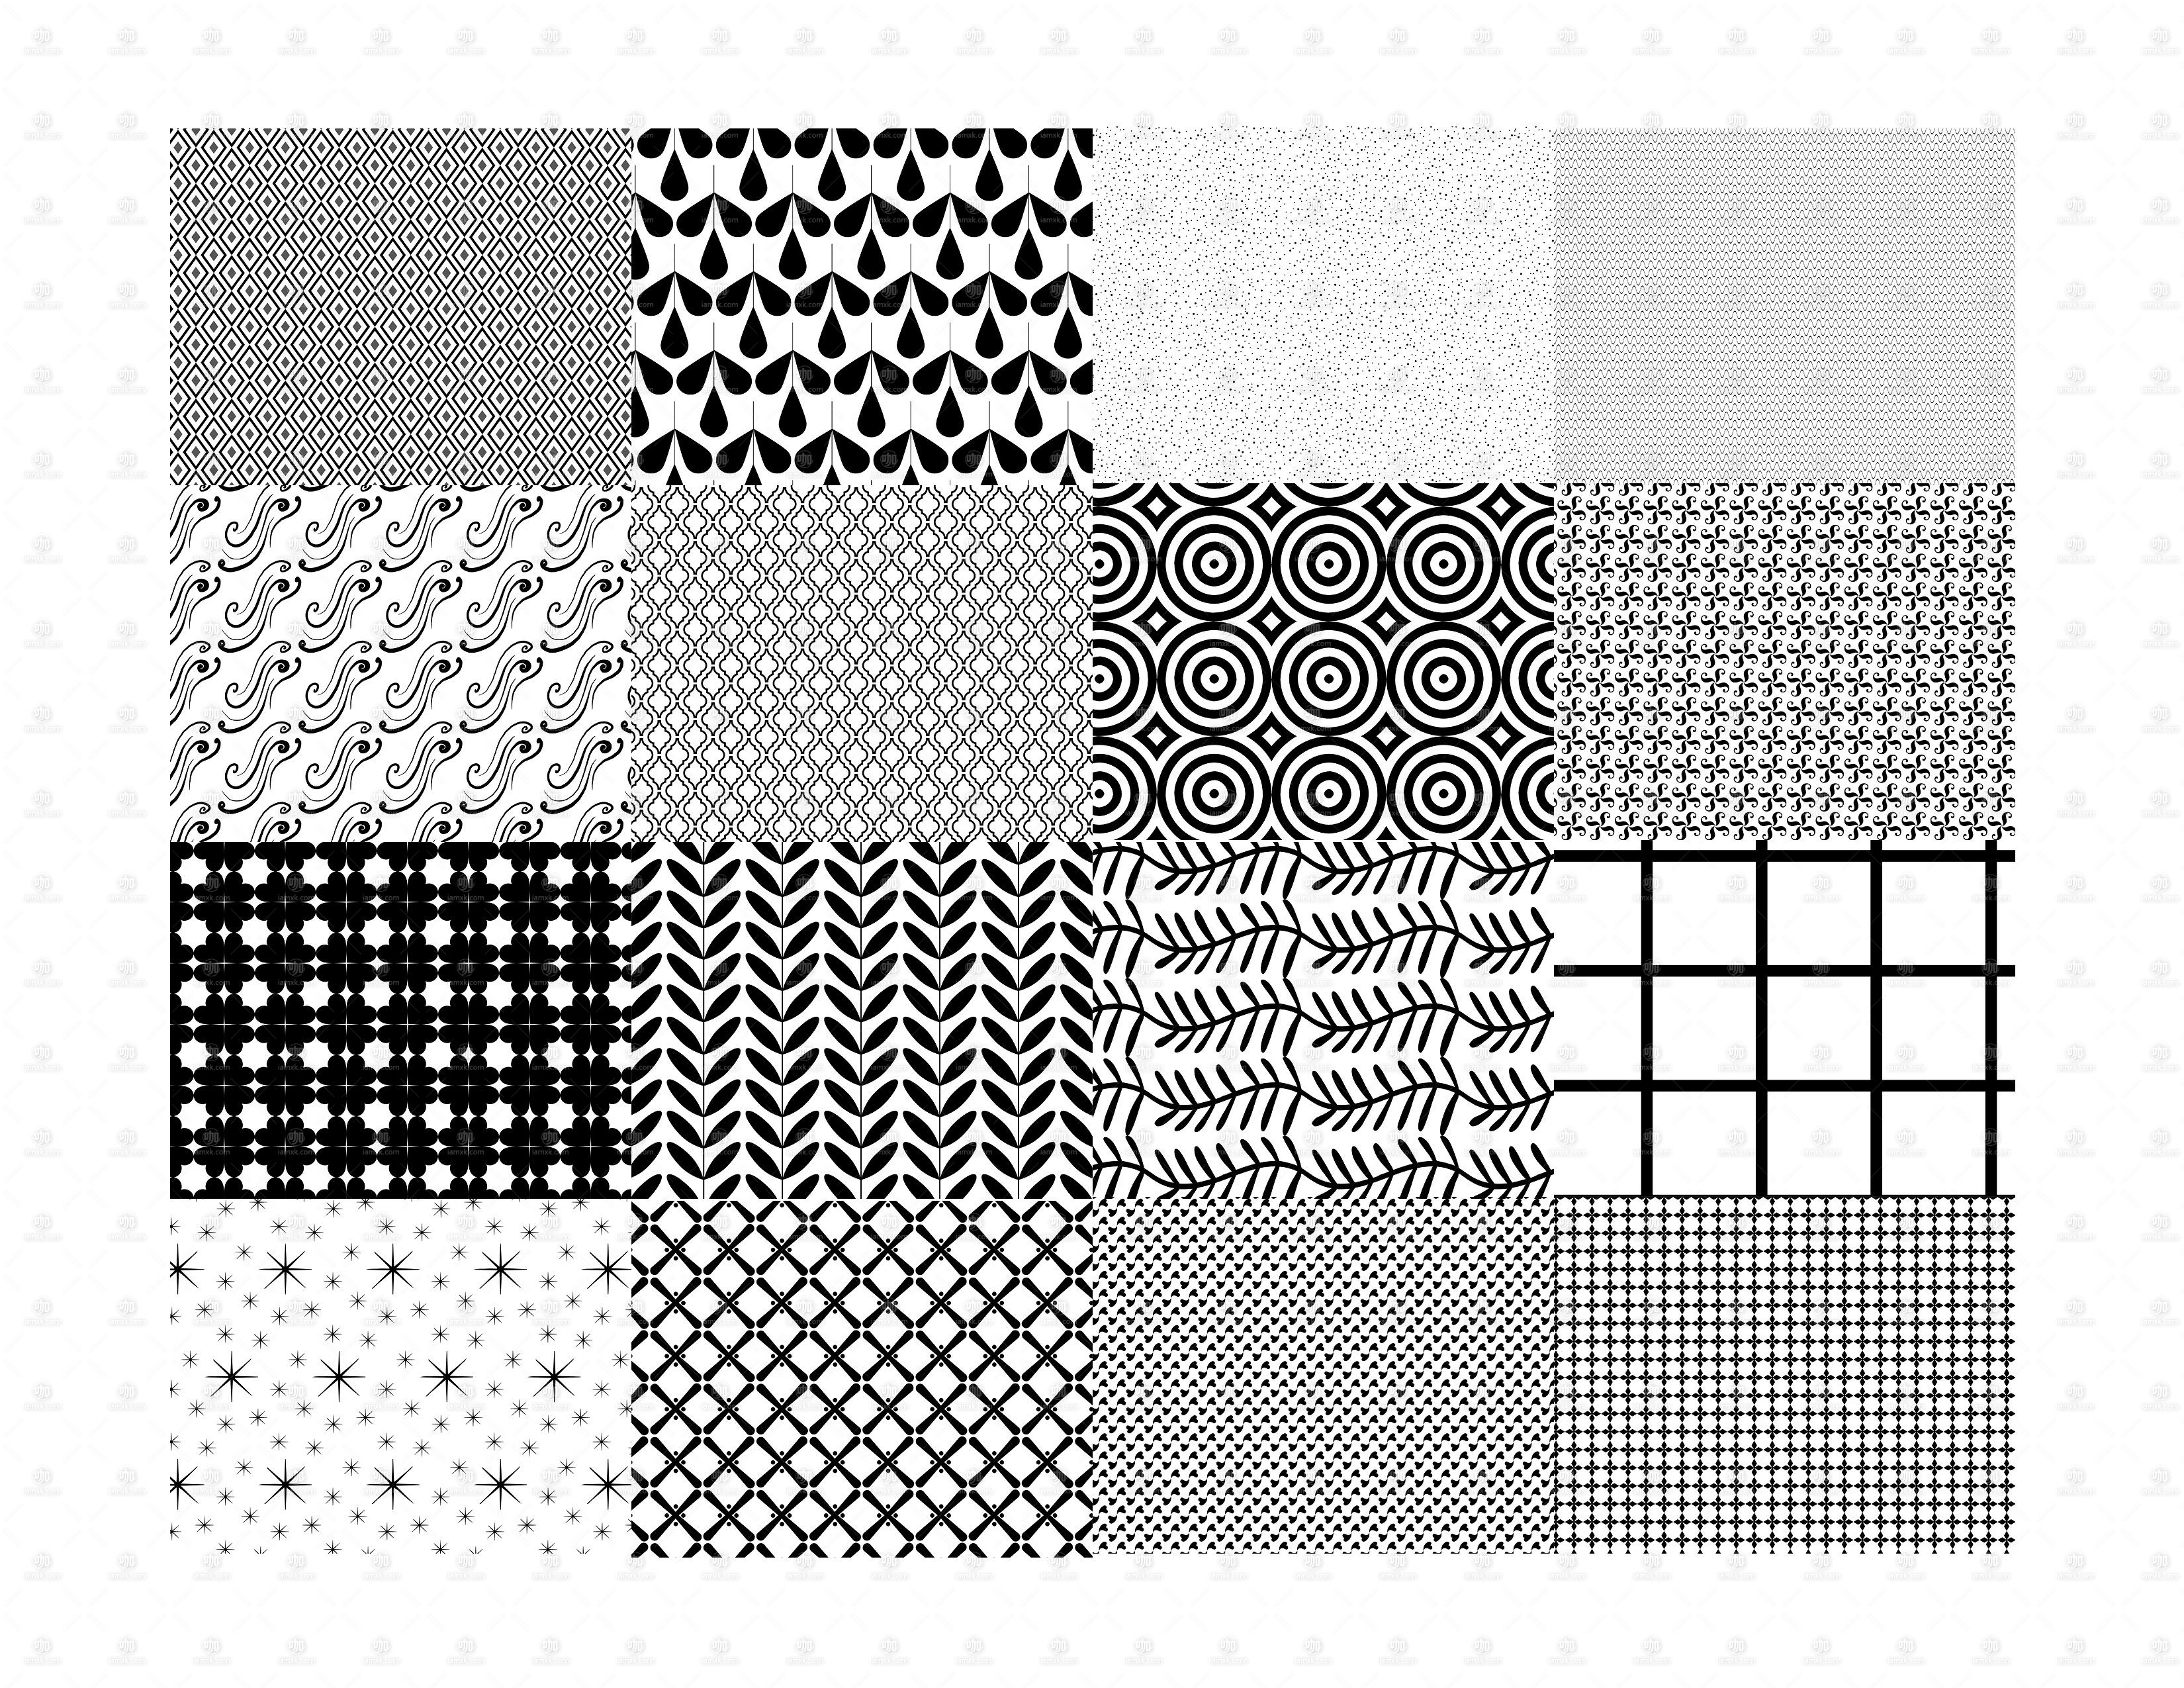 74款无缝艺术纹理笔刷 74 Seamless Patterns for Procreate [仅支持 Procreate 应用]插图(1)